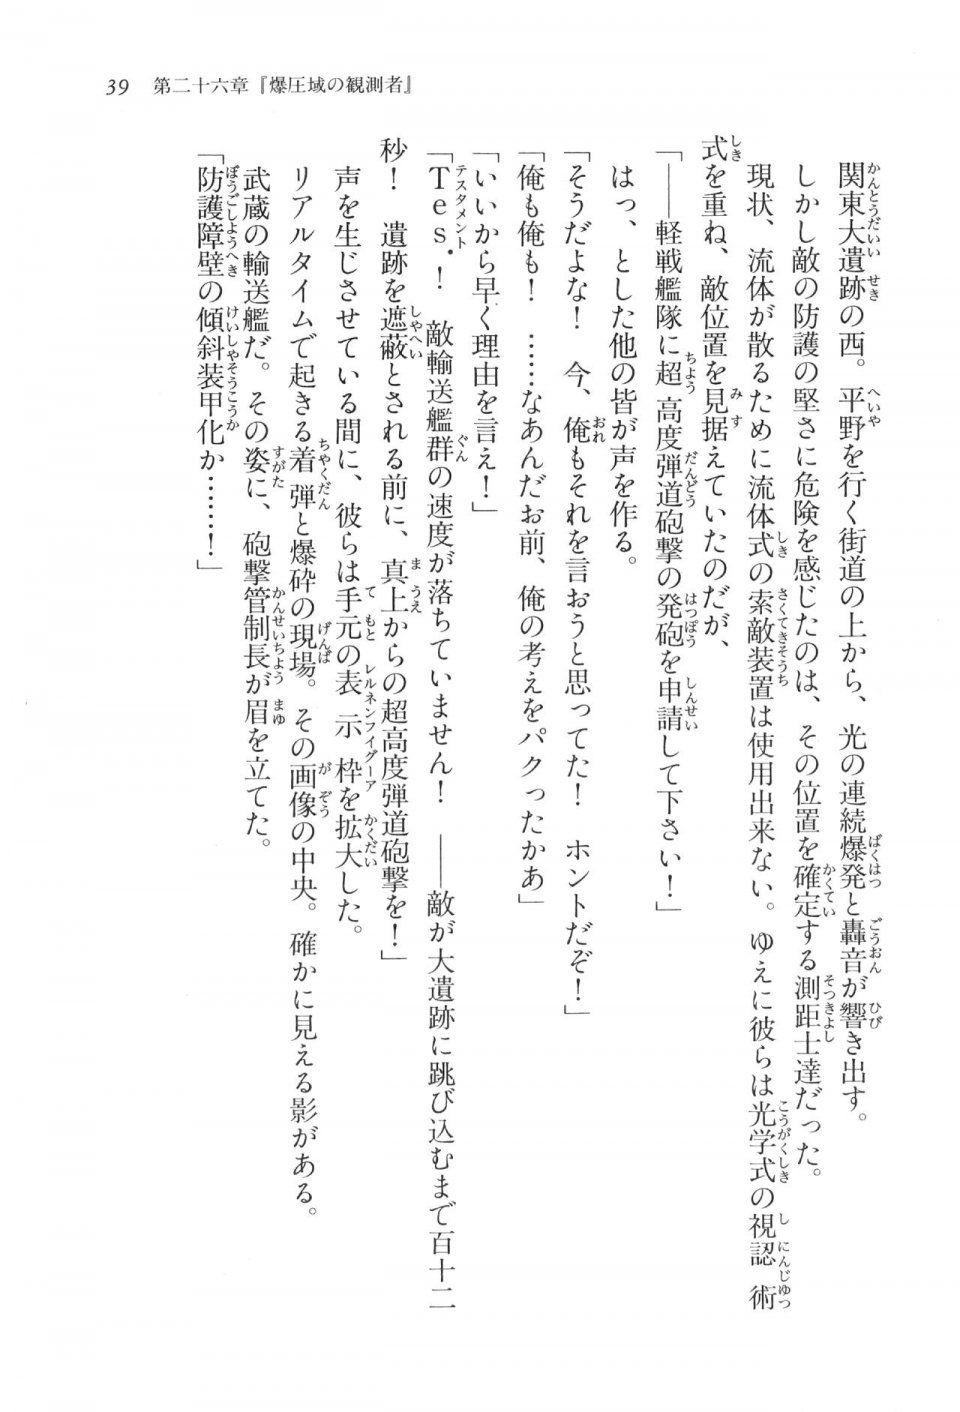 Kyoukai Senjou no Horizon LN Vol 17(7B) - Photo #39